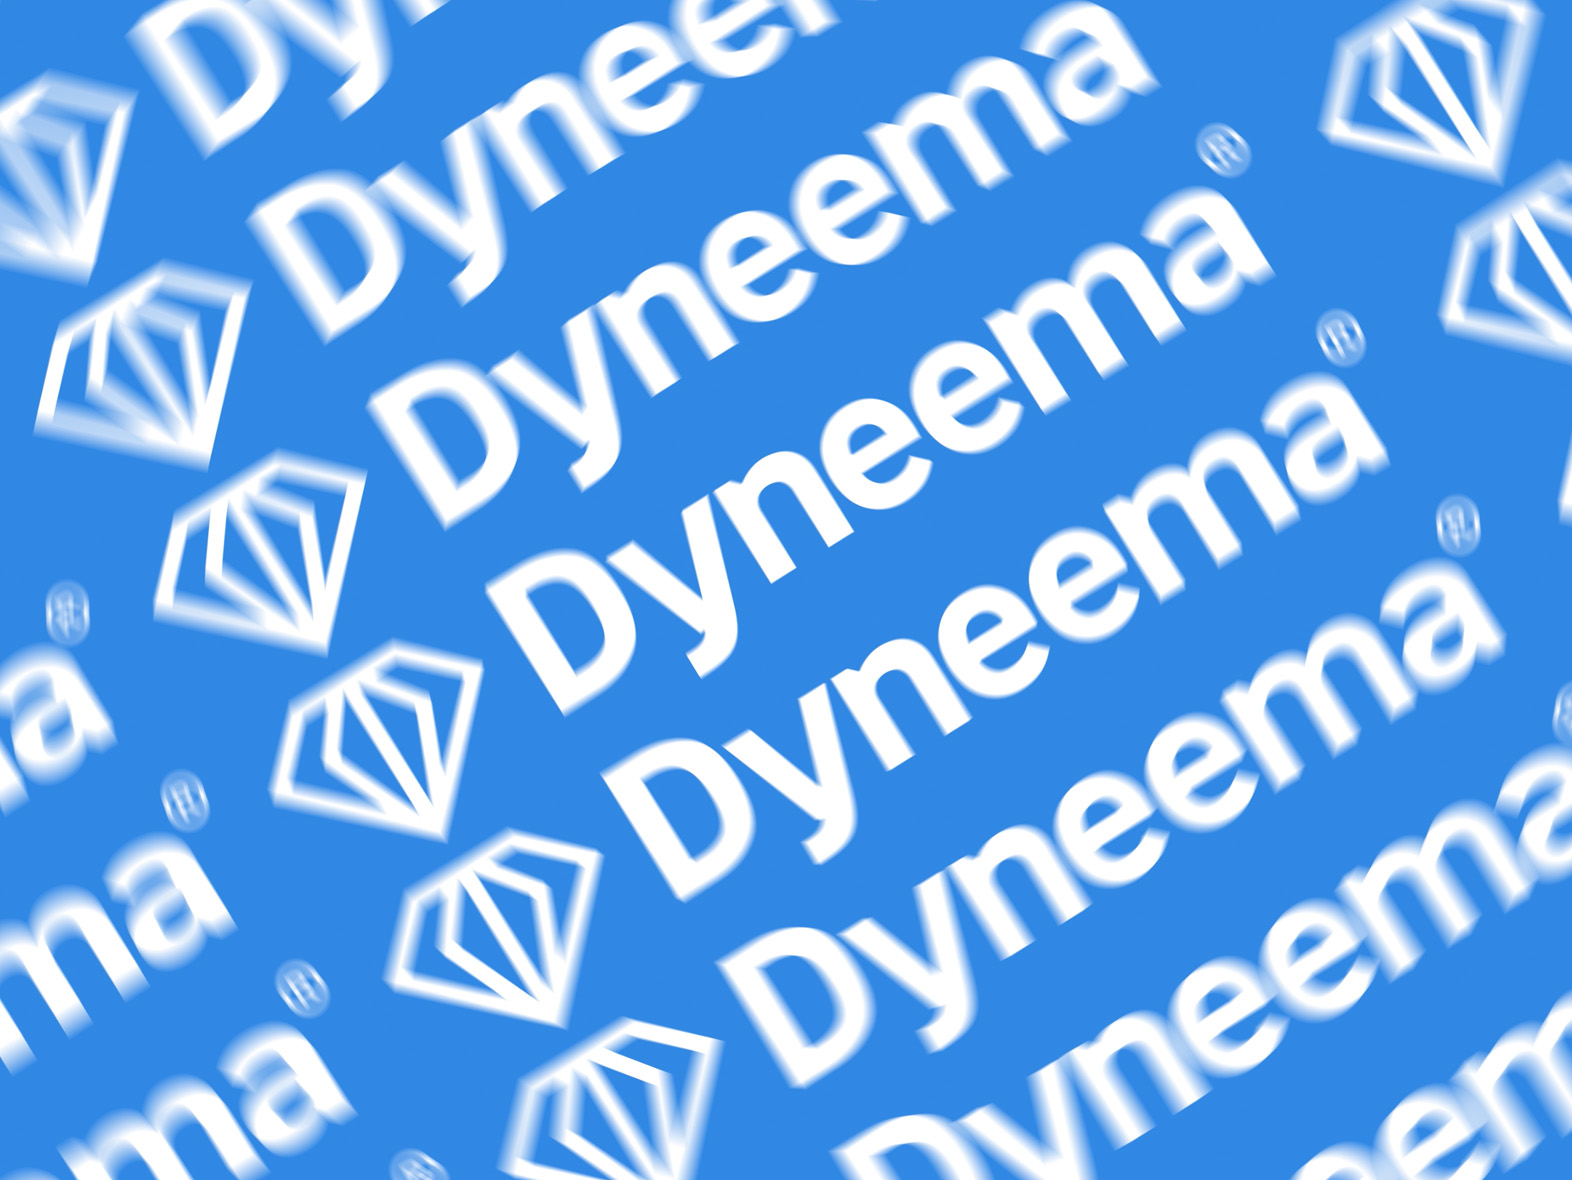 www.dyneema.com